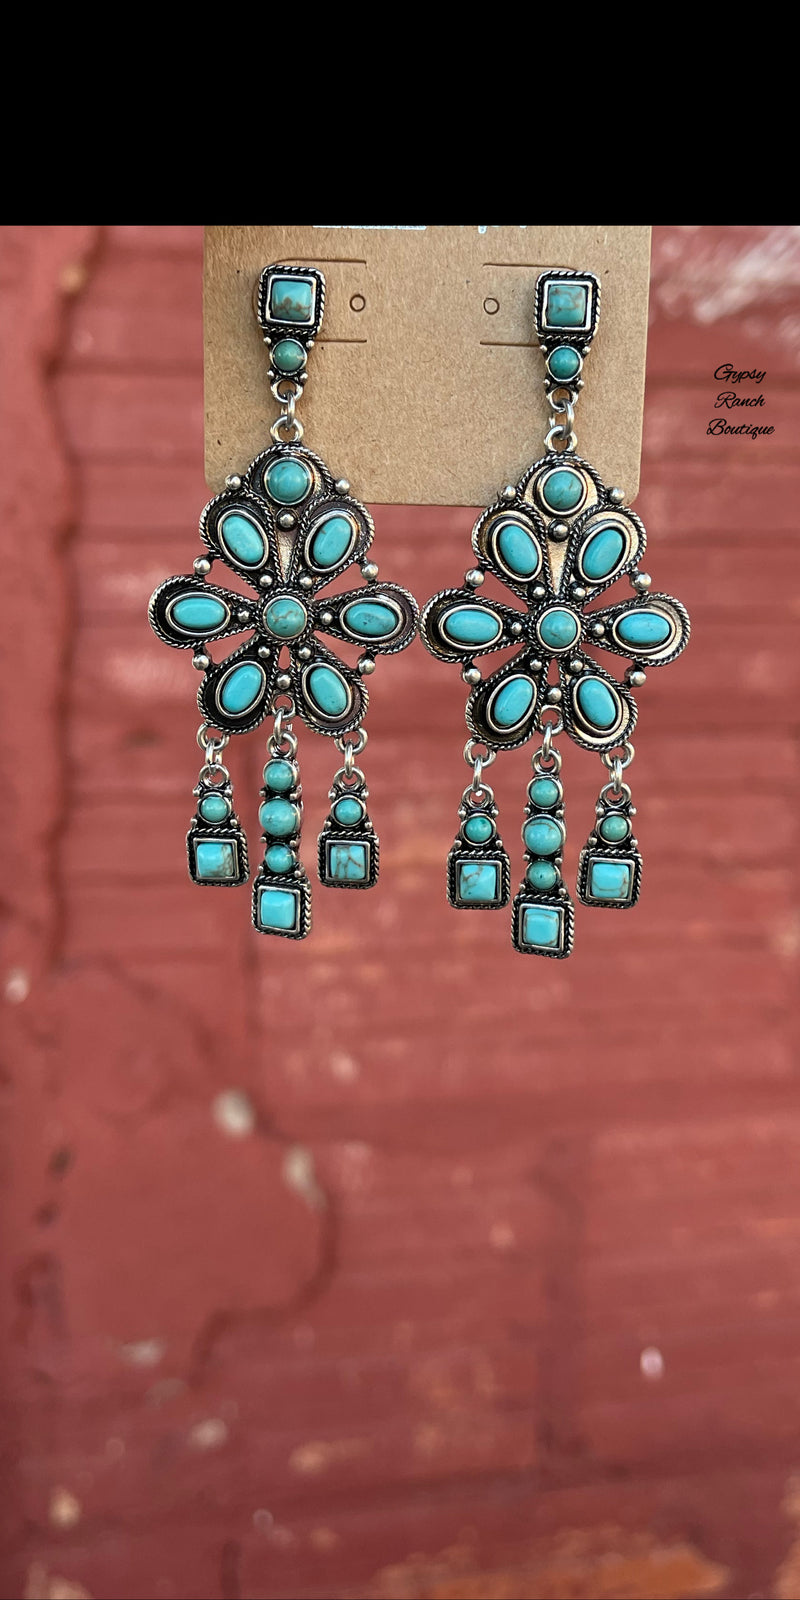 Sedona Turquoise Earrings